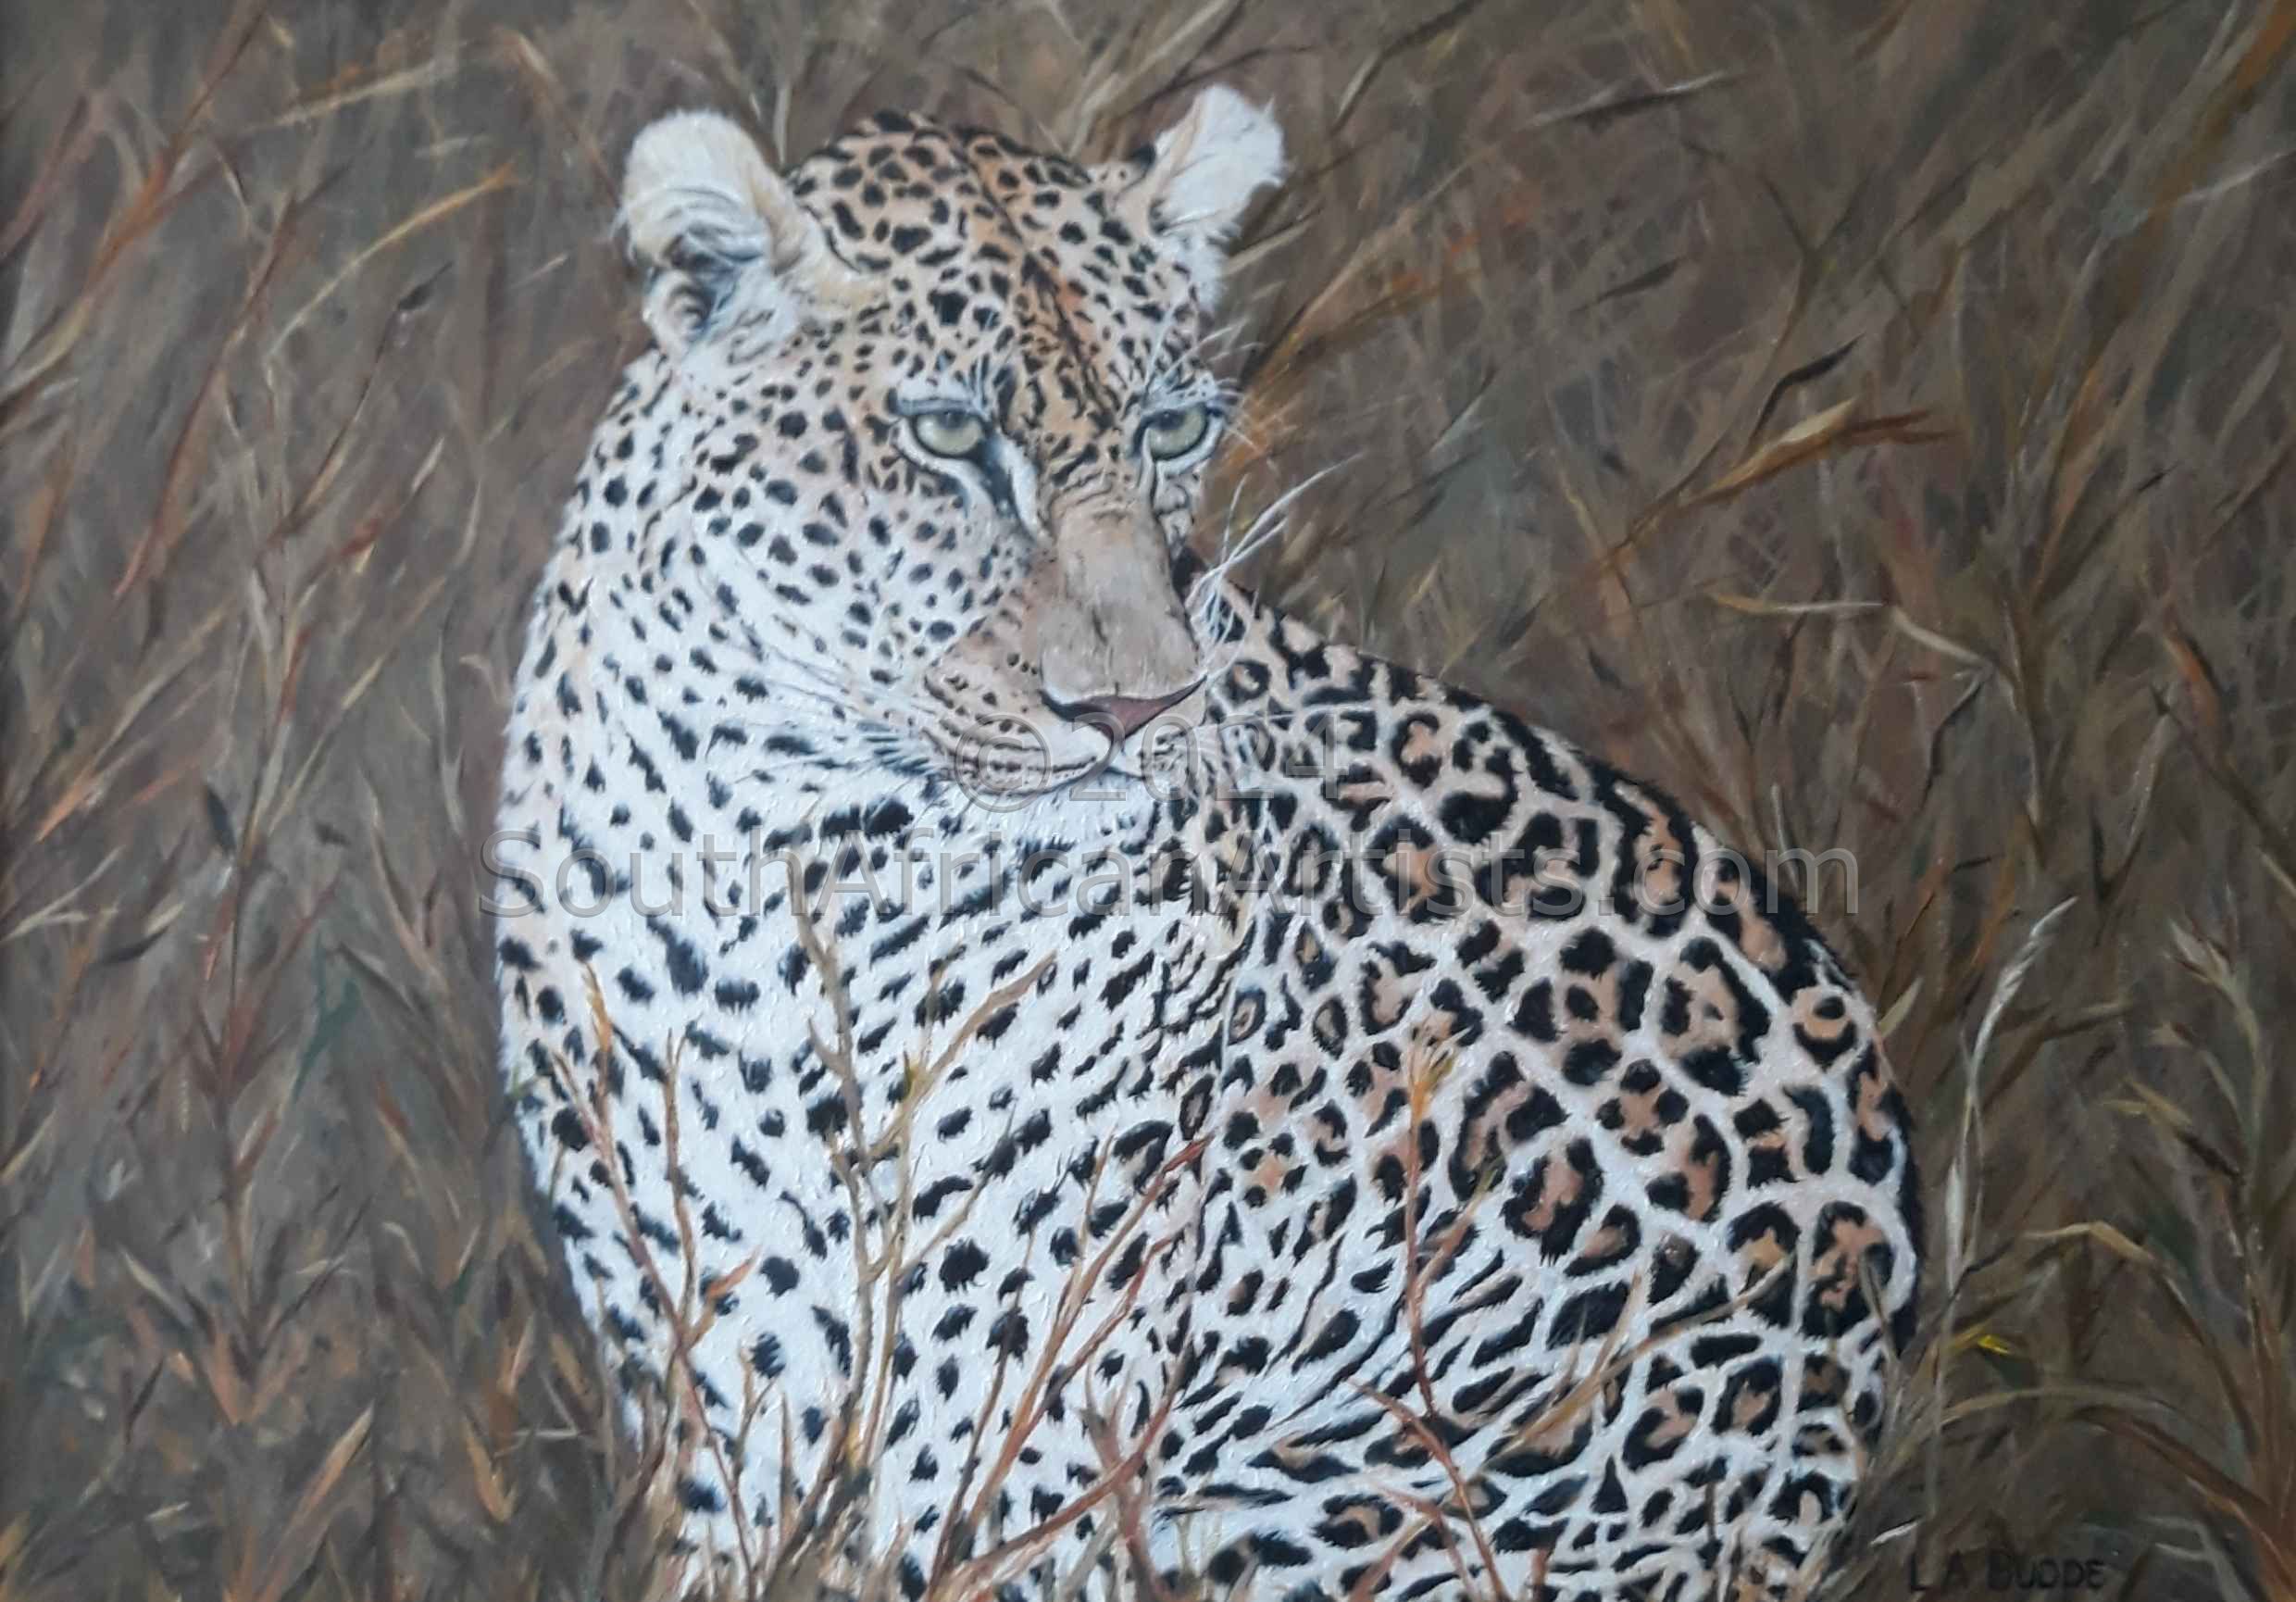 Ingwe (Leopard)